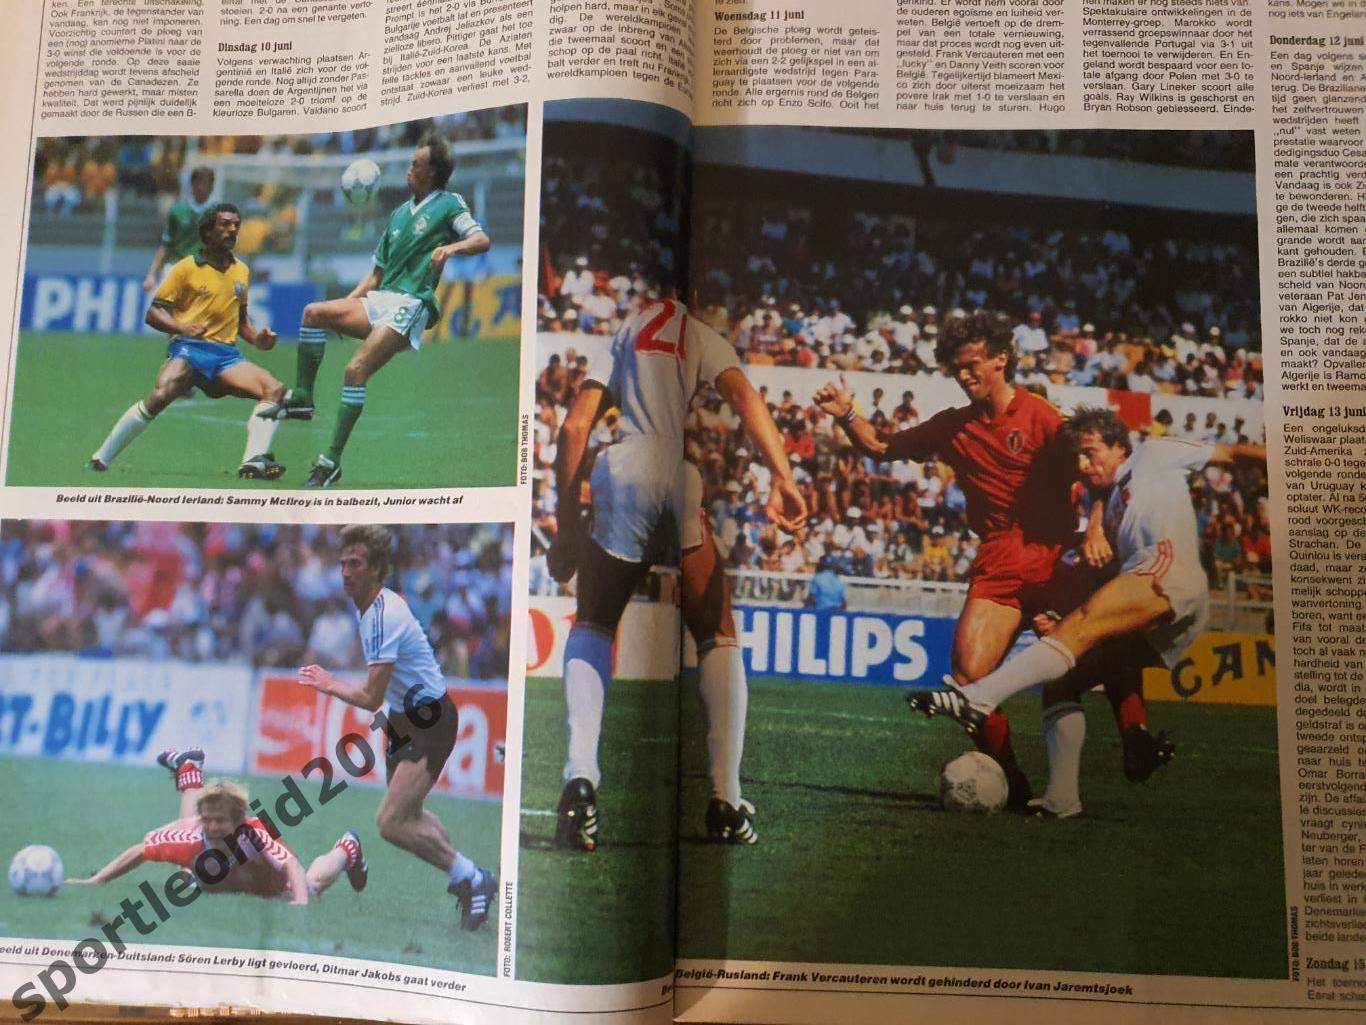 Voetbal International 1986.3 топ выпуска.Итоговые к ЧМ-86.2 1